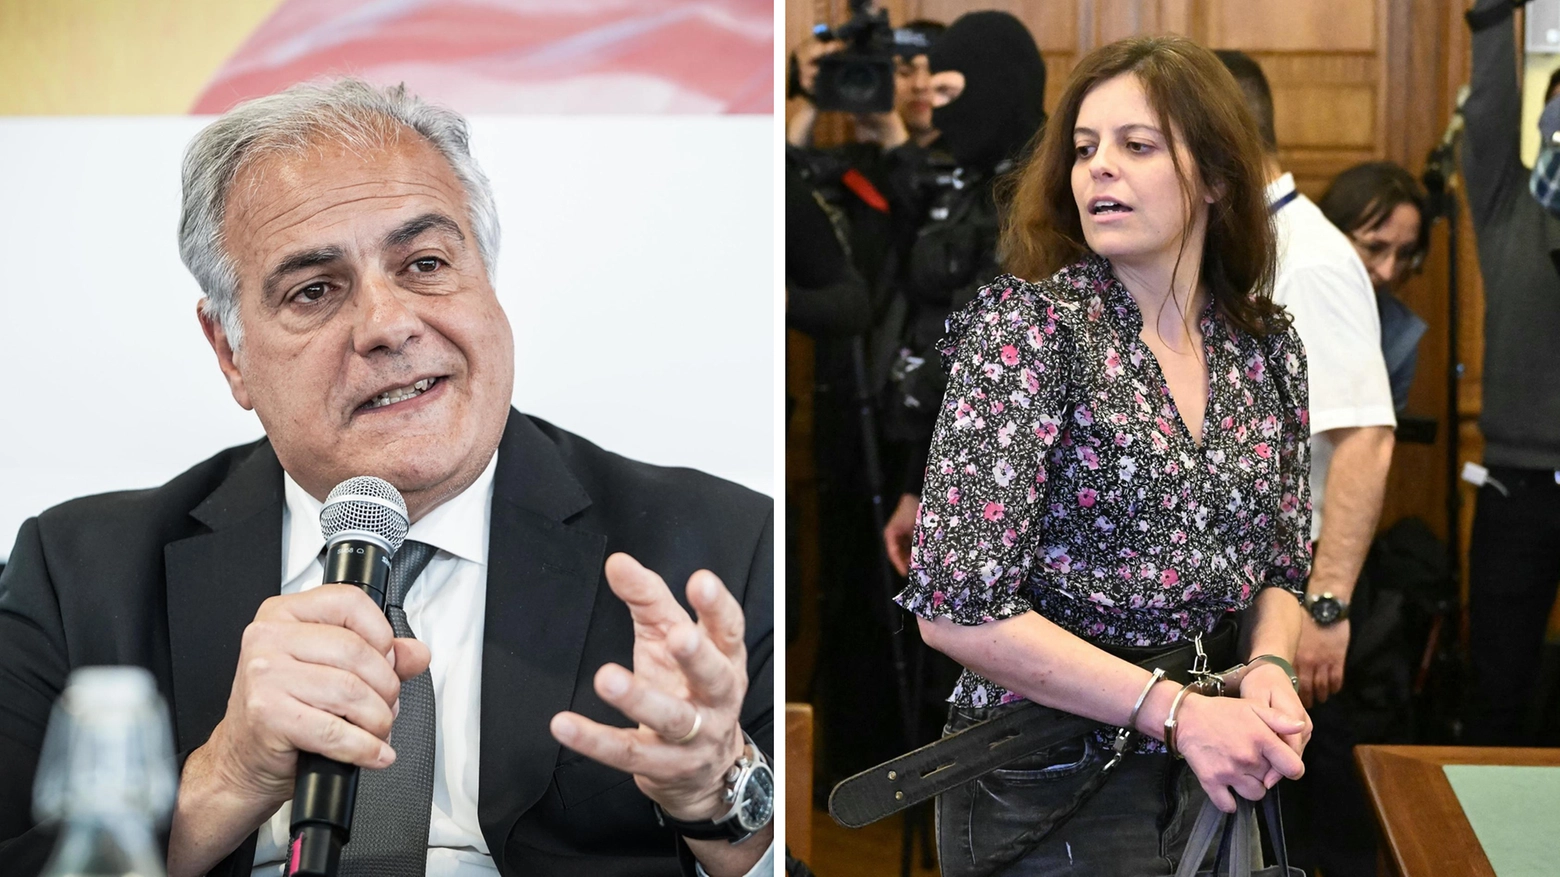 Roberto Salis ha commentato così le parole che il ministro Tajani ha detto a proposito del “lavoro silenzioso e senza polemiche” che avrebbe riportato in Italia Chico Forti